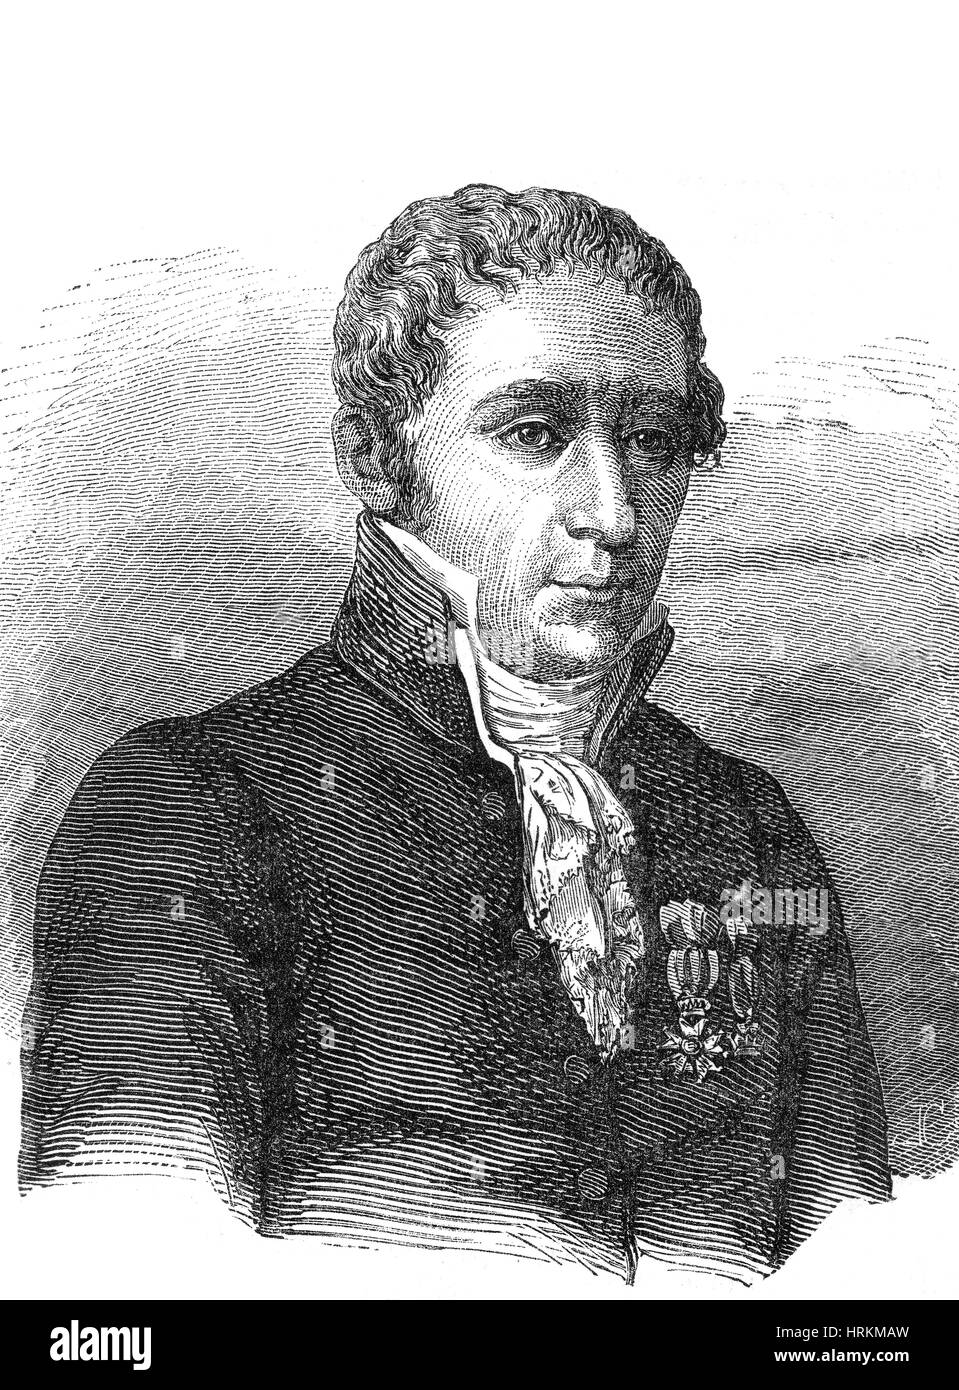 Alessandro Volta, italienischer Physiker Stockfoto